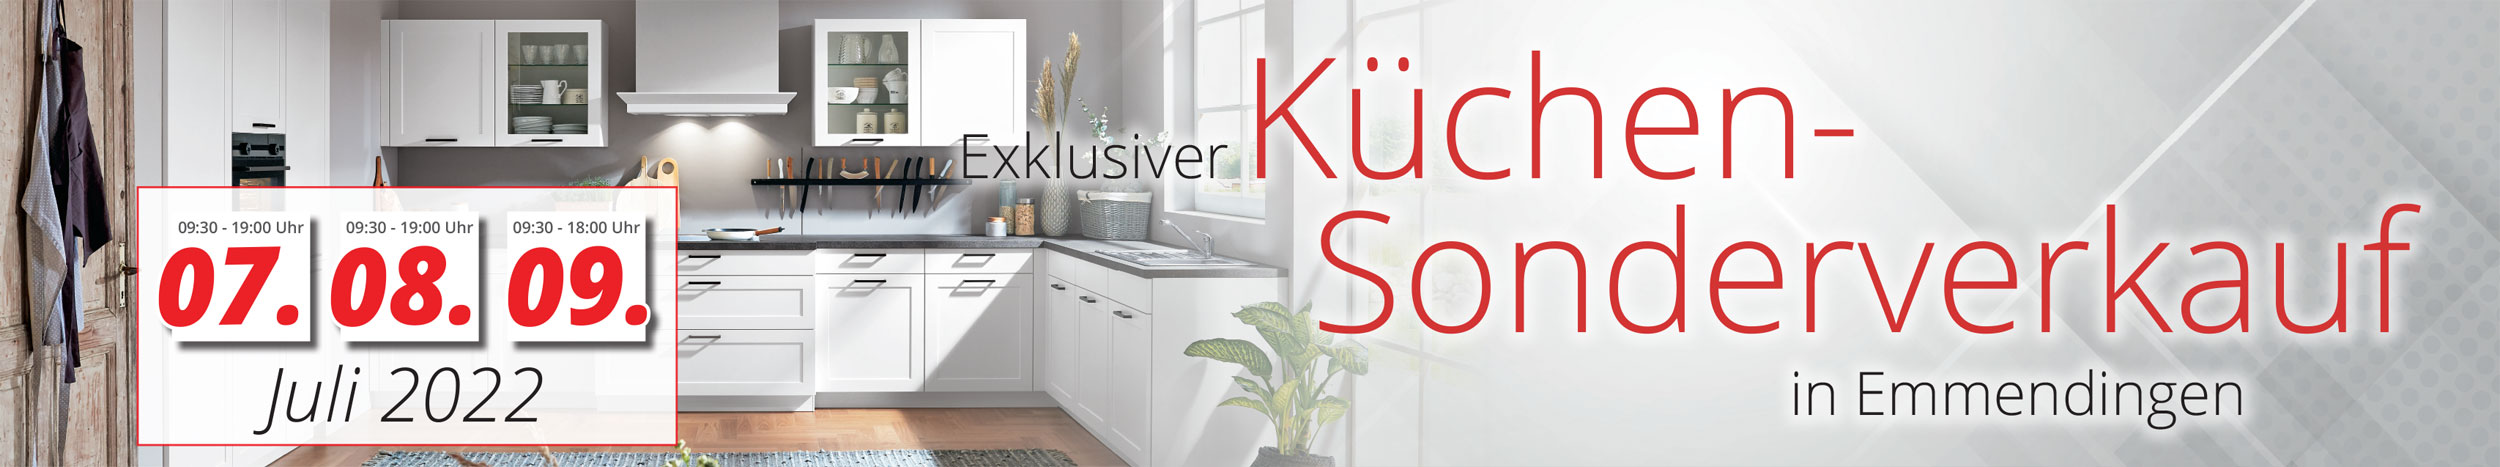 3 Tage exklusiver Küchen-Sonderverkauf in Emmendingen!